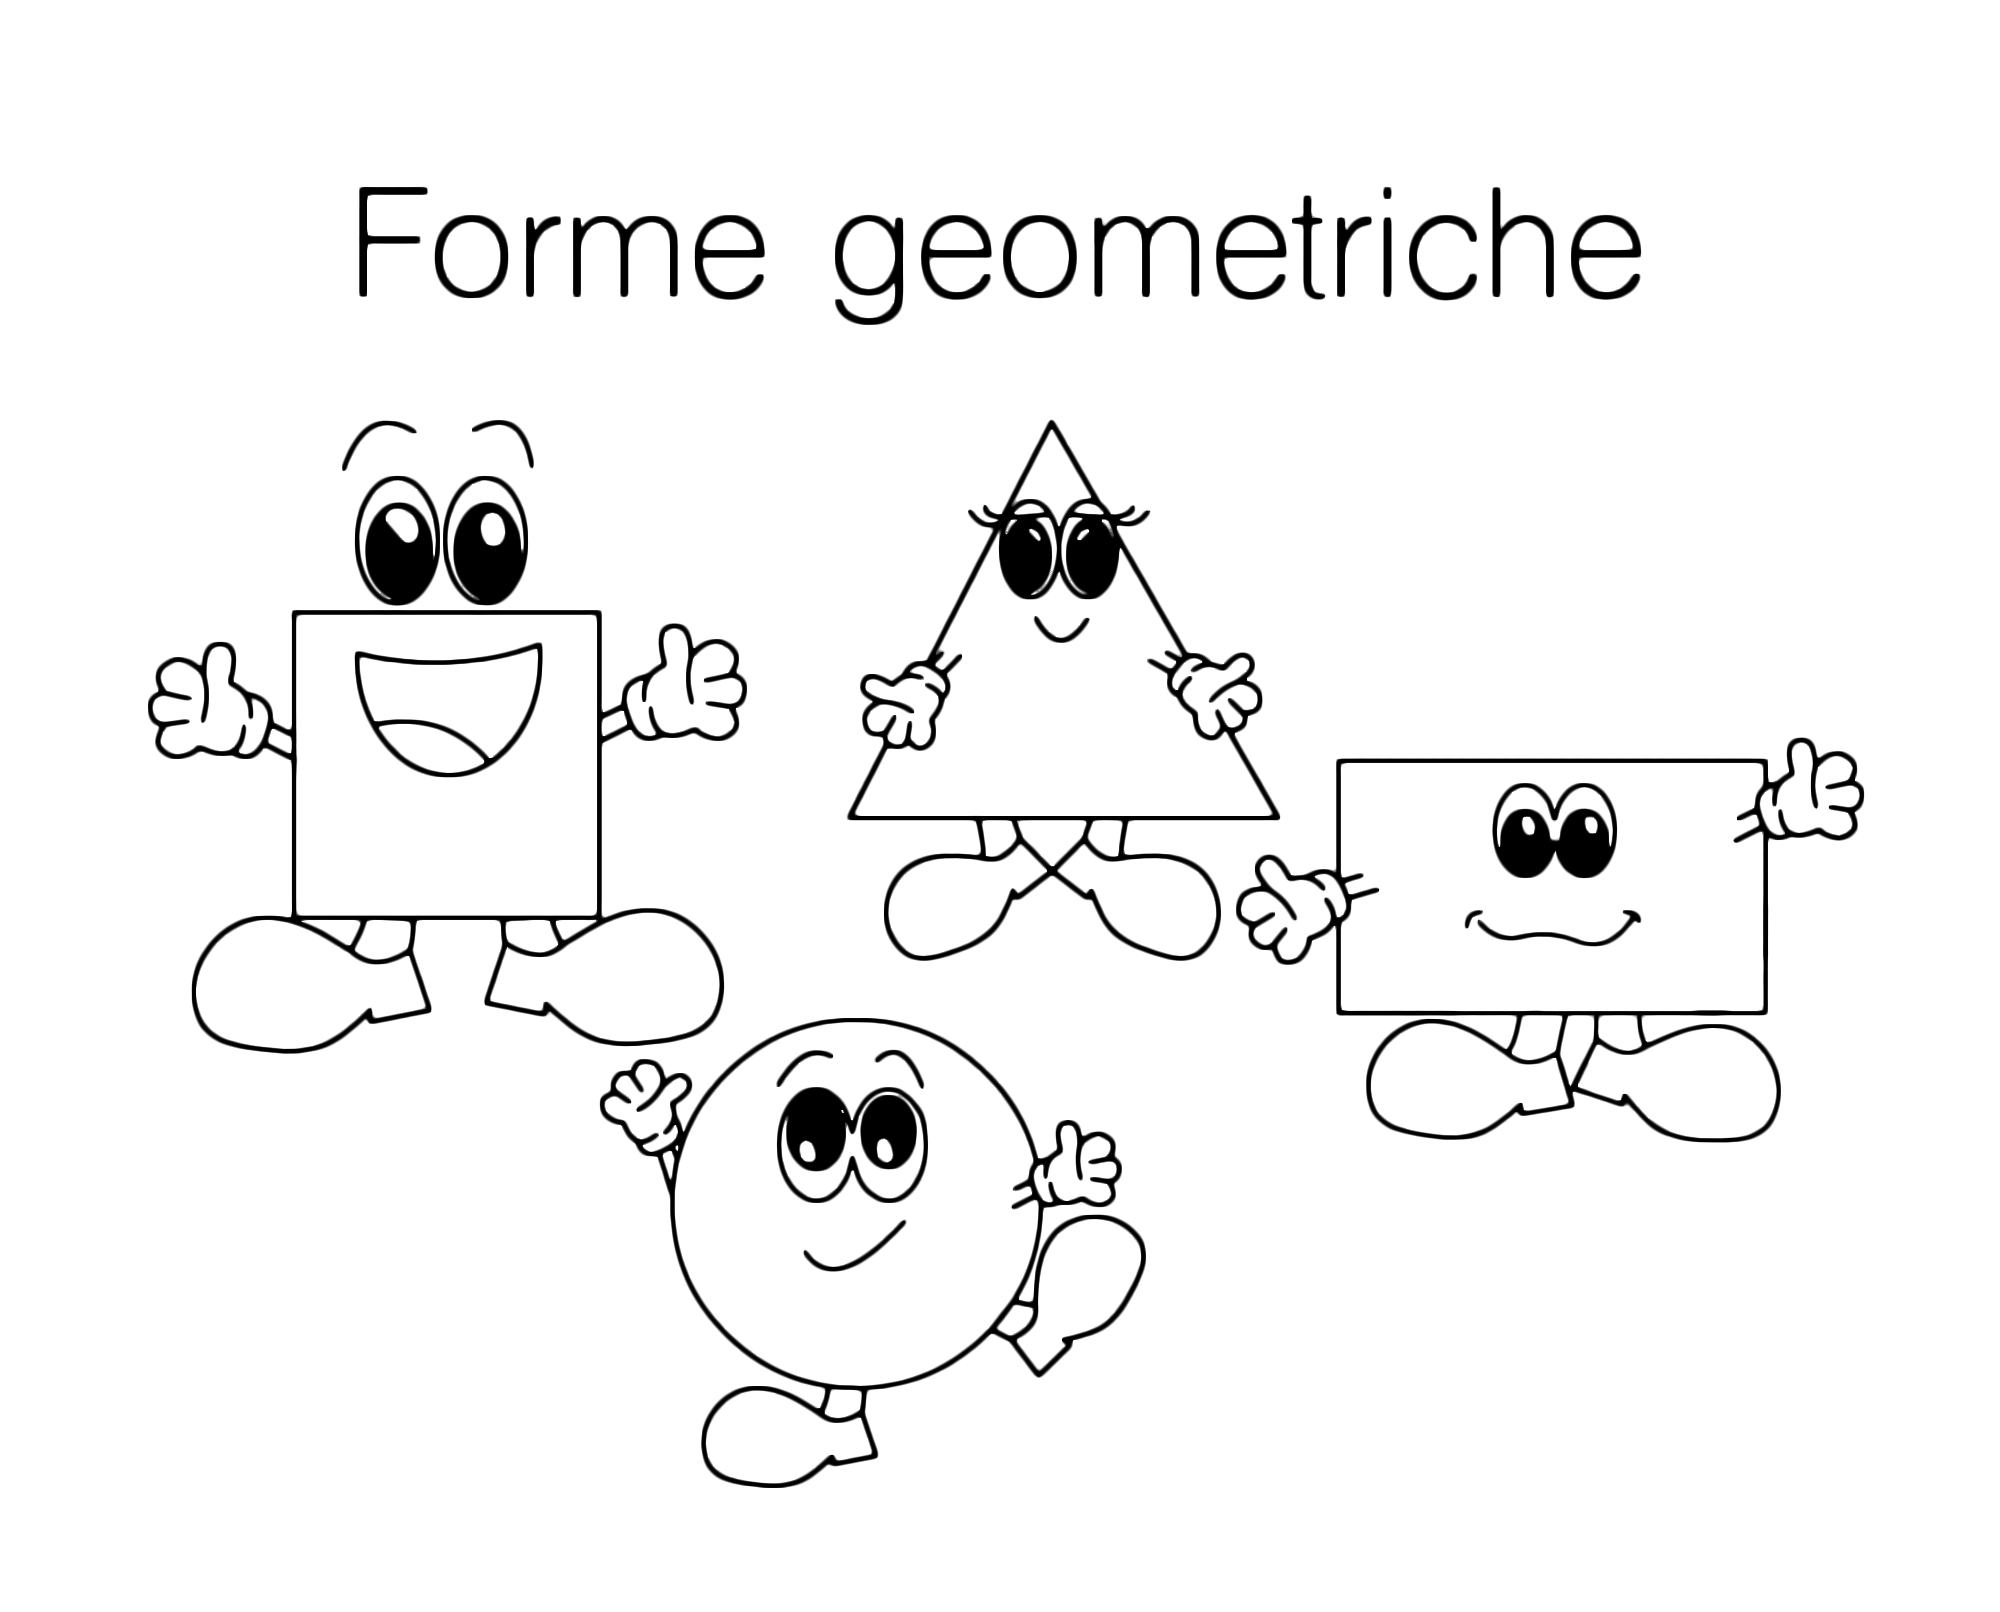 Figure geometriche - Rettangolo quadrato e triangolo per bambini